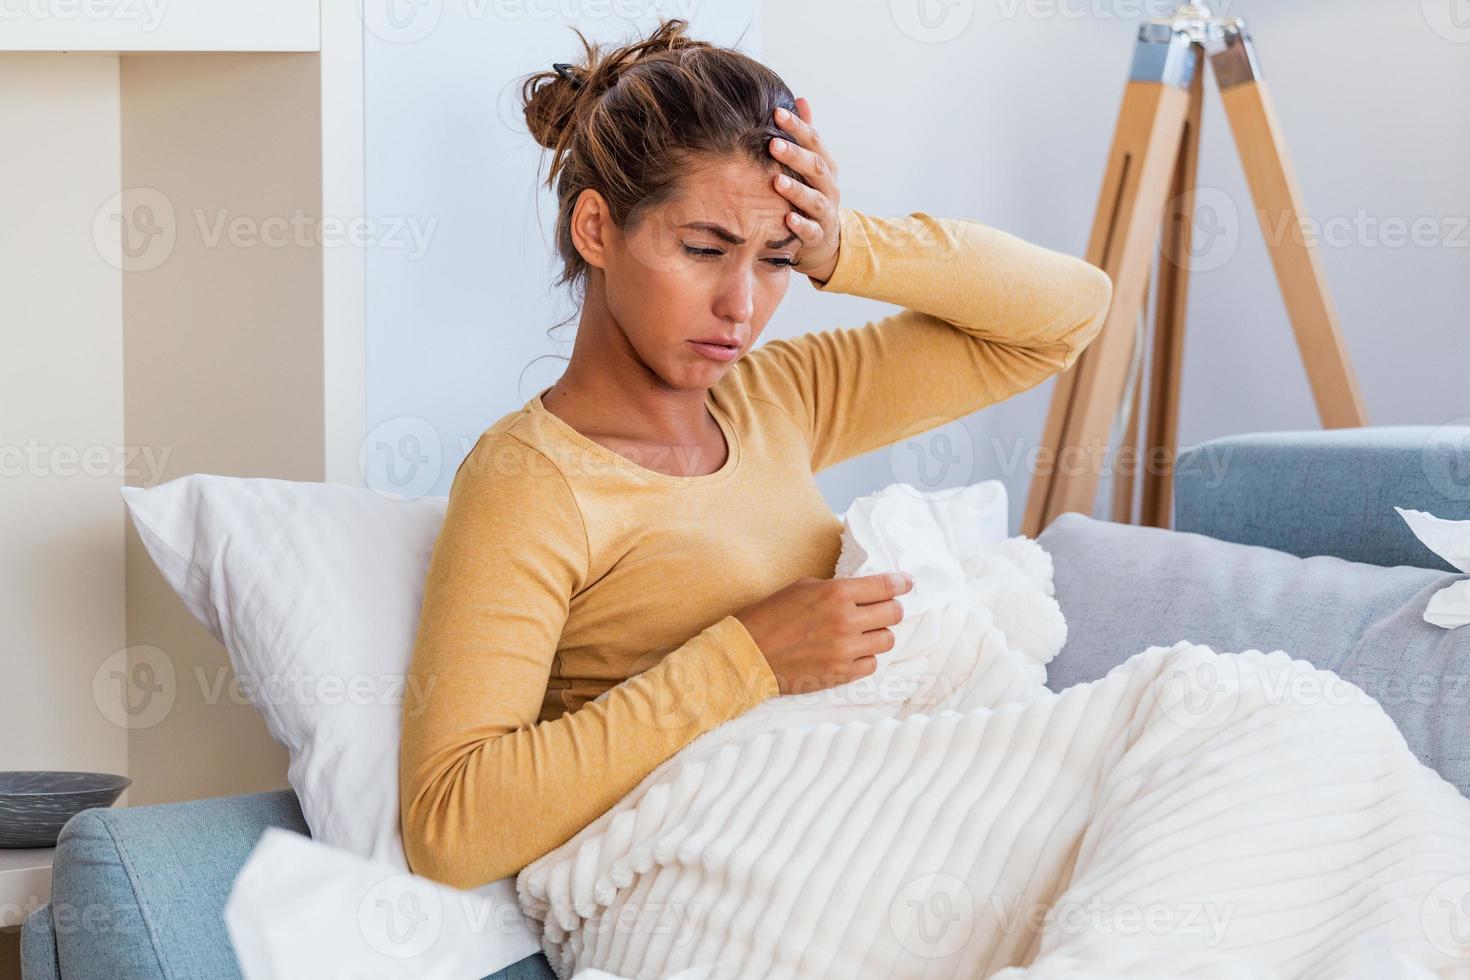 sjuk kvinna med huvudvärk Sammanträde under de filt. sjuk kvinna med säsong- infektioner, influensa, allergi liggande i säng. sjuk kvinna täckt med en filt liggande i säng med hög feber och en influensa, vilar. foto